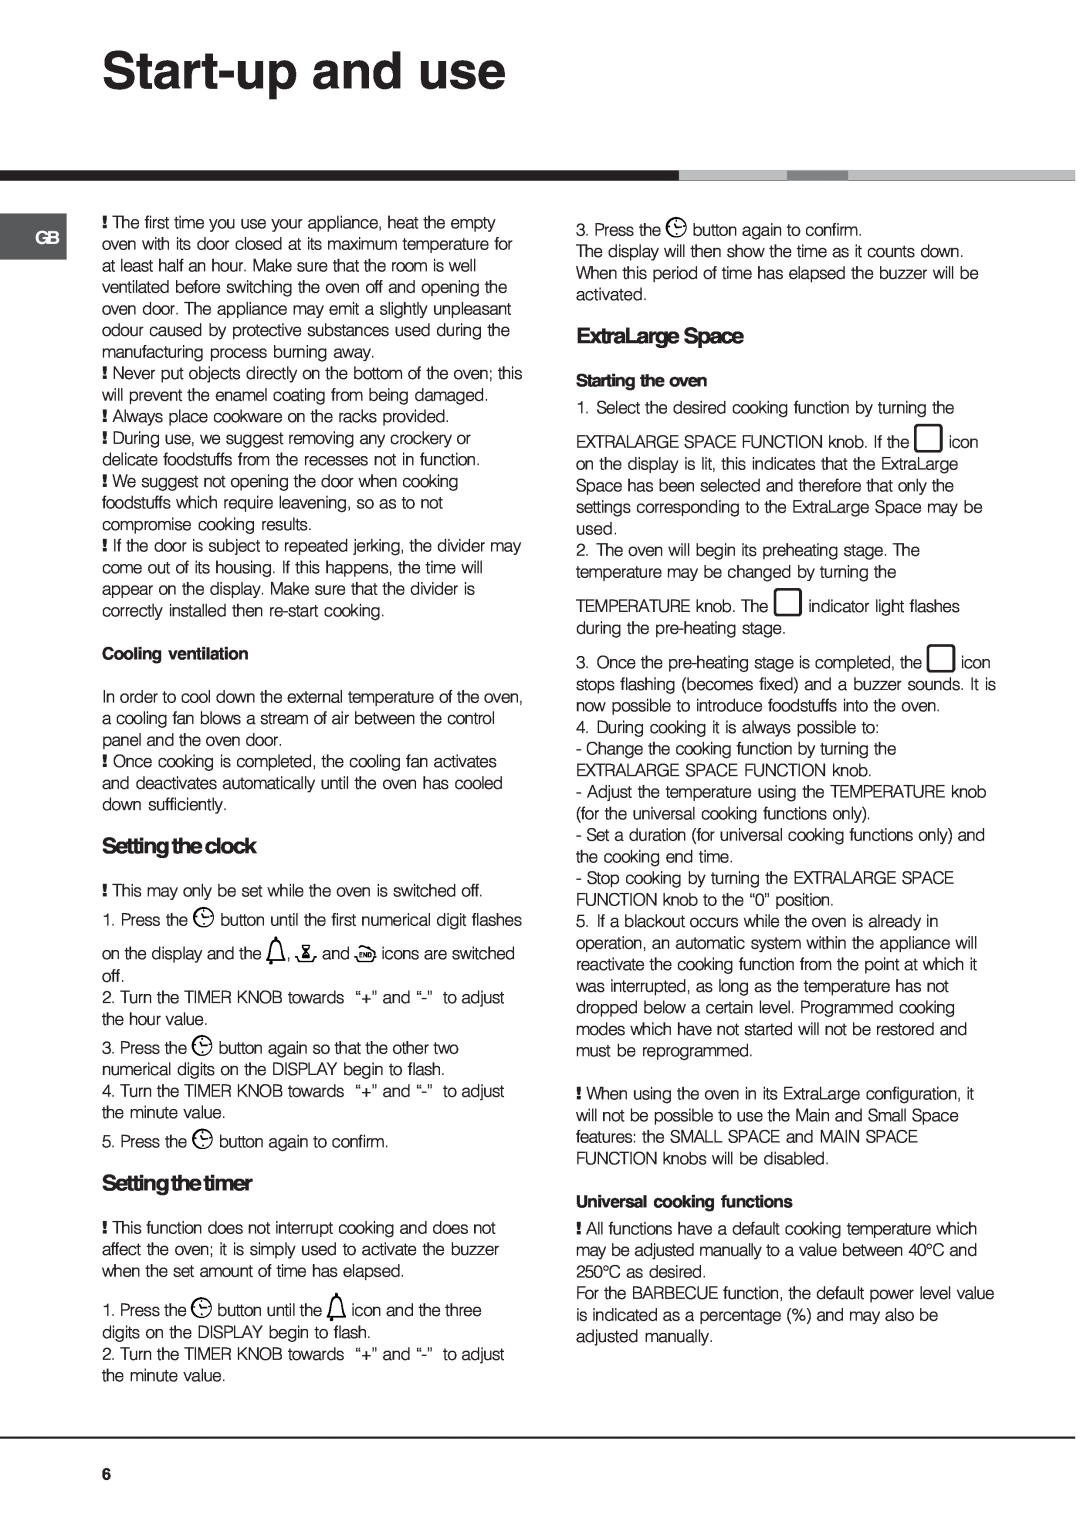 Ariston OS 99D P IX manual Start-up and use, Settingtheclock, Settingthetimer, ExtraLarge Space 